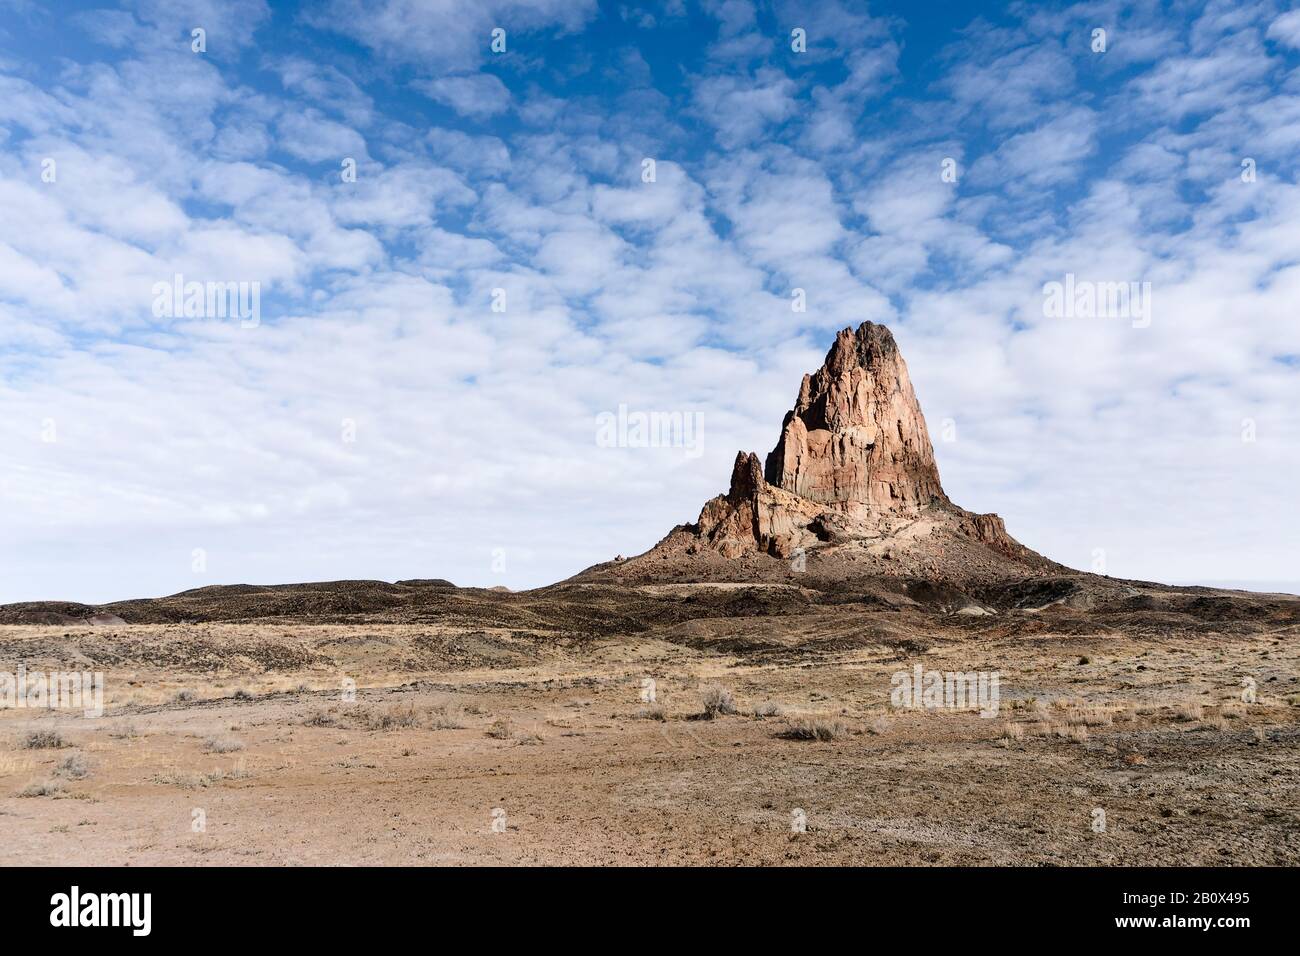 Landschaftlich reizvolle Monument Valley Arizona Landschaft in der Wüste mit Felsformationen und blauem Himmel Stockfoto